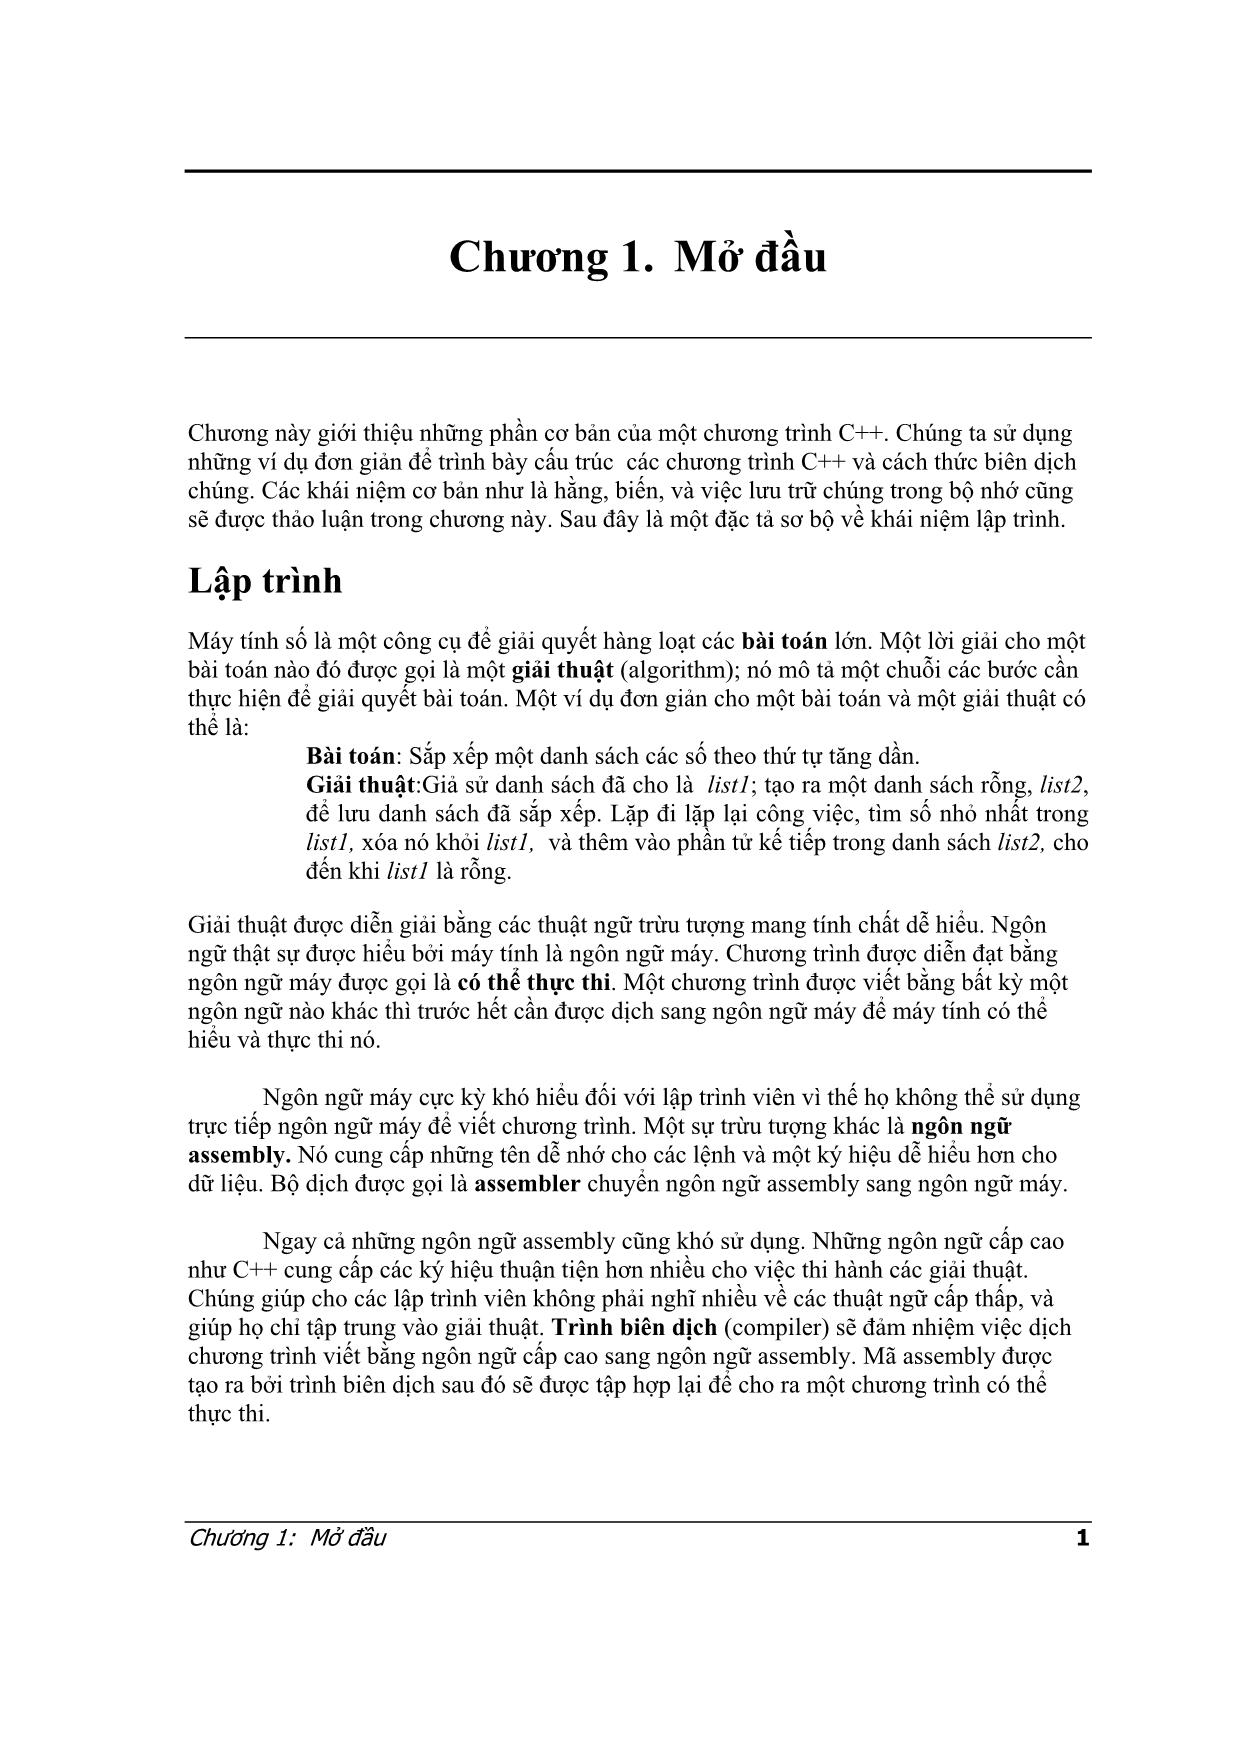 Lập trình C++ - Chương 1: Mở đầu trang 1